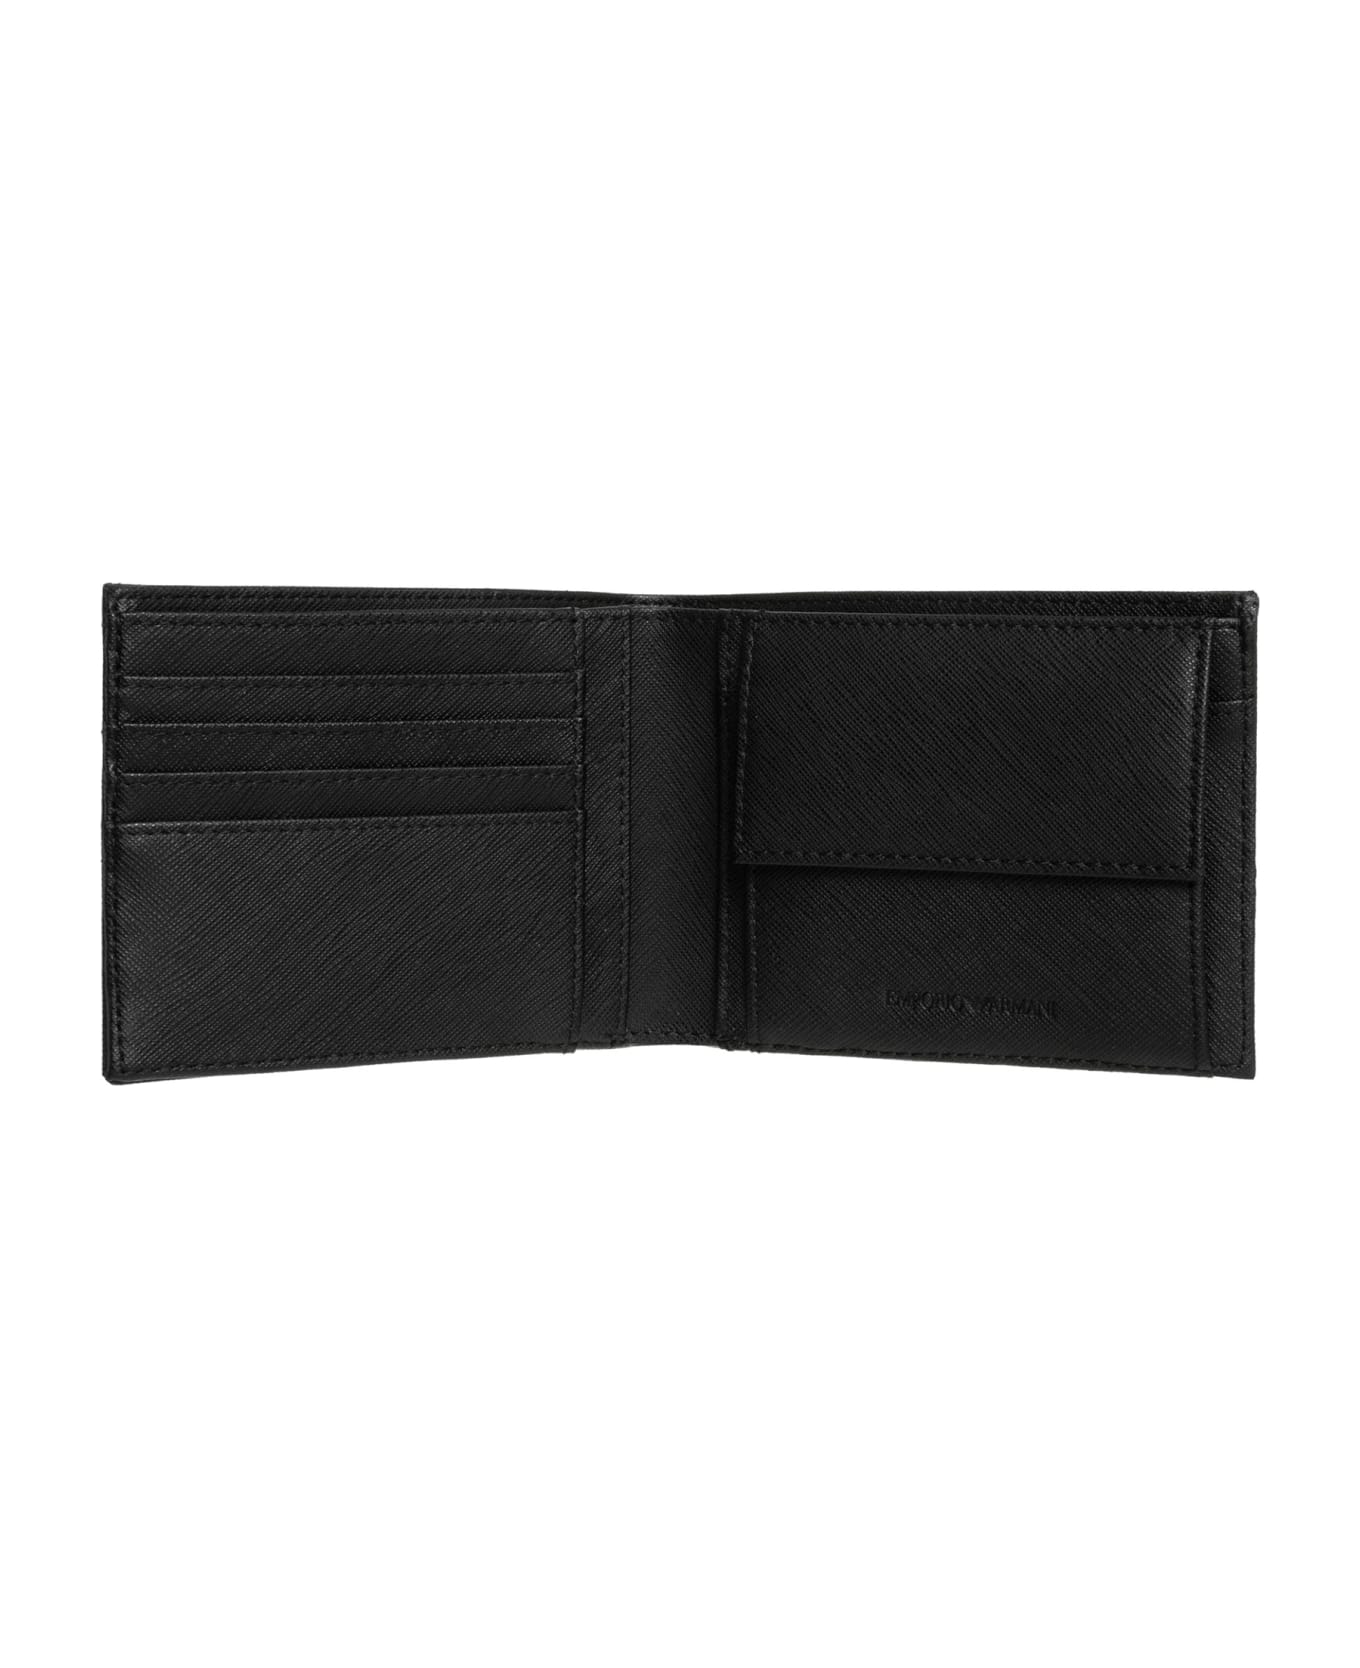 Emporio Armani Wallet - Black